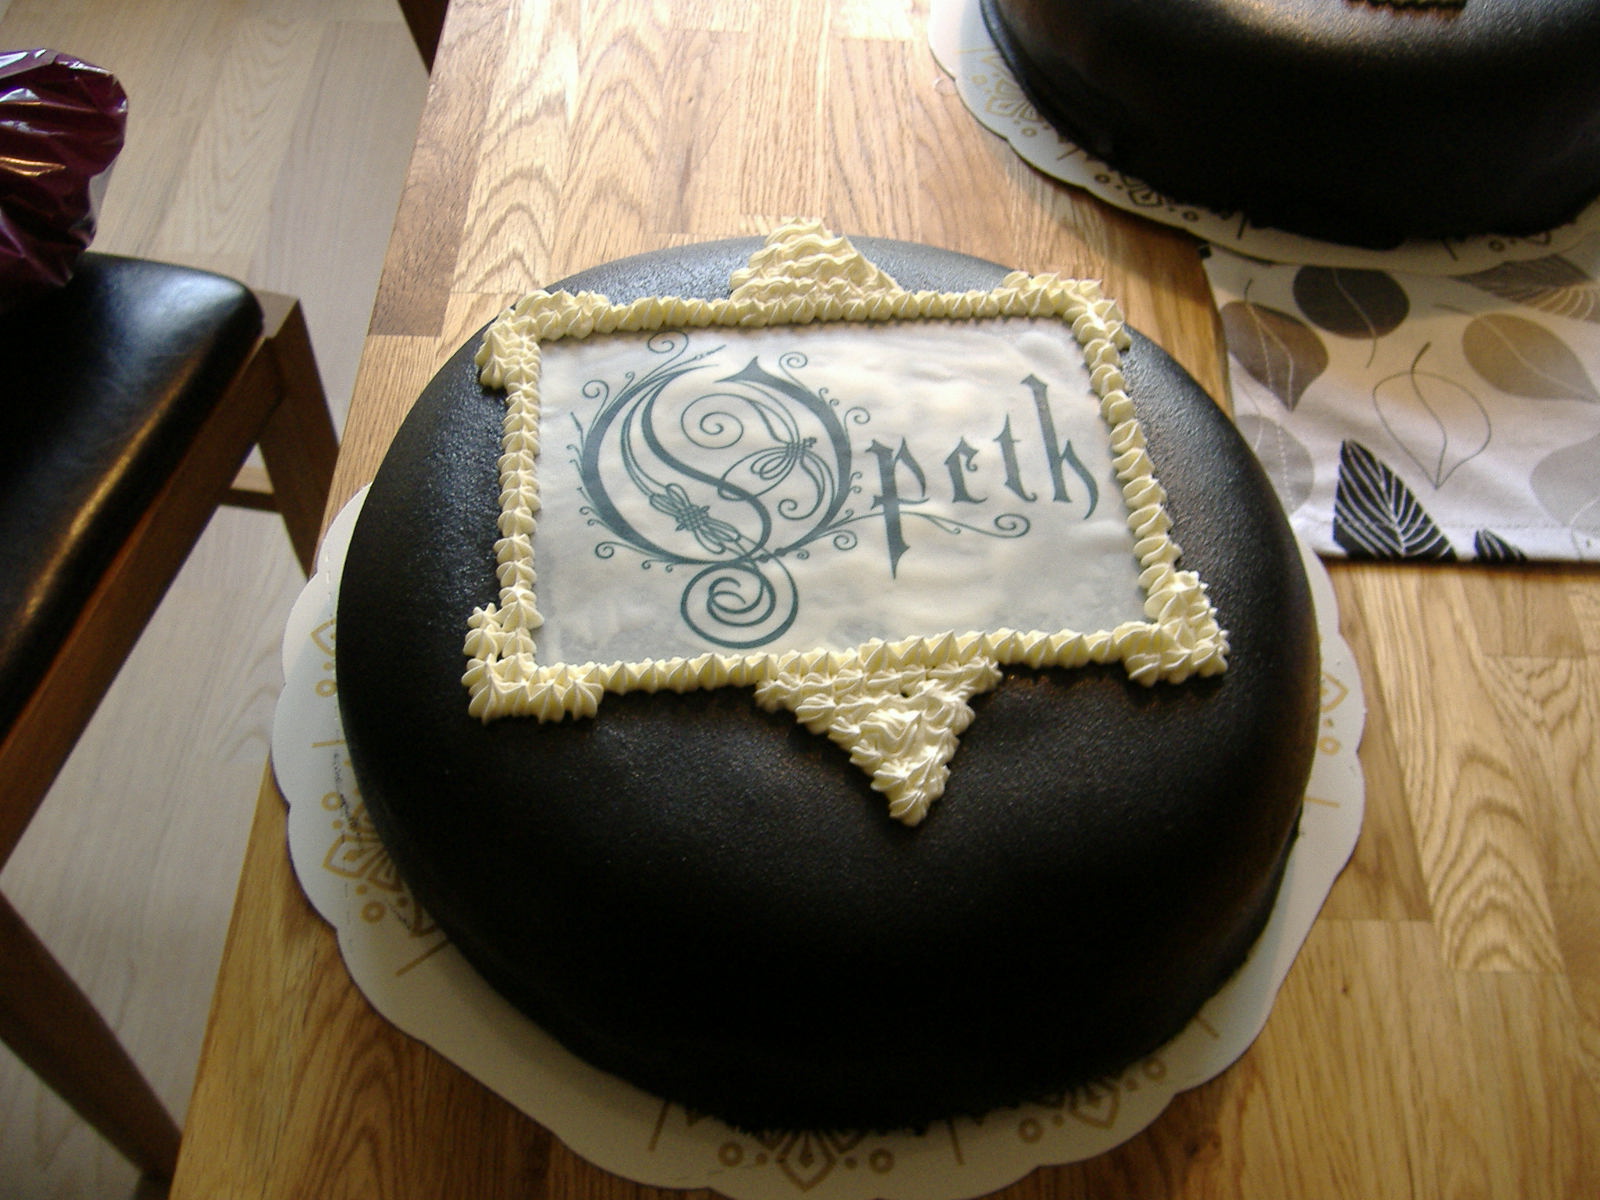 Opeth_cake_by_Lylla4.jpg